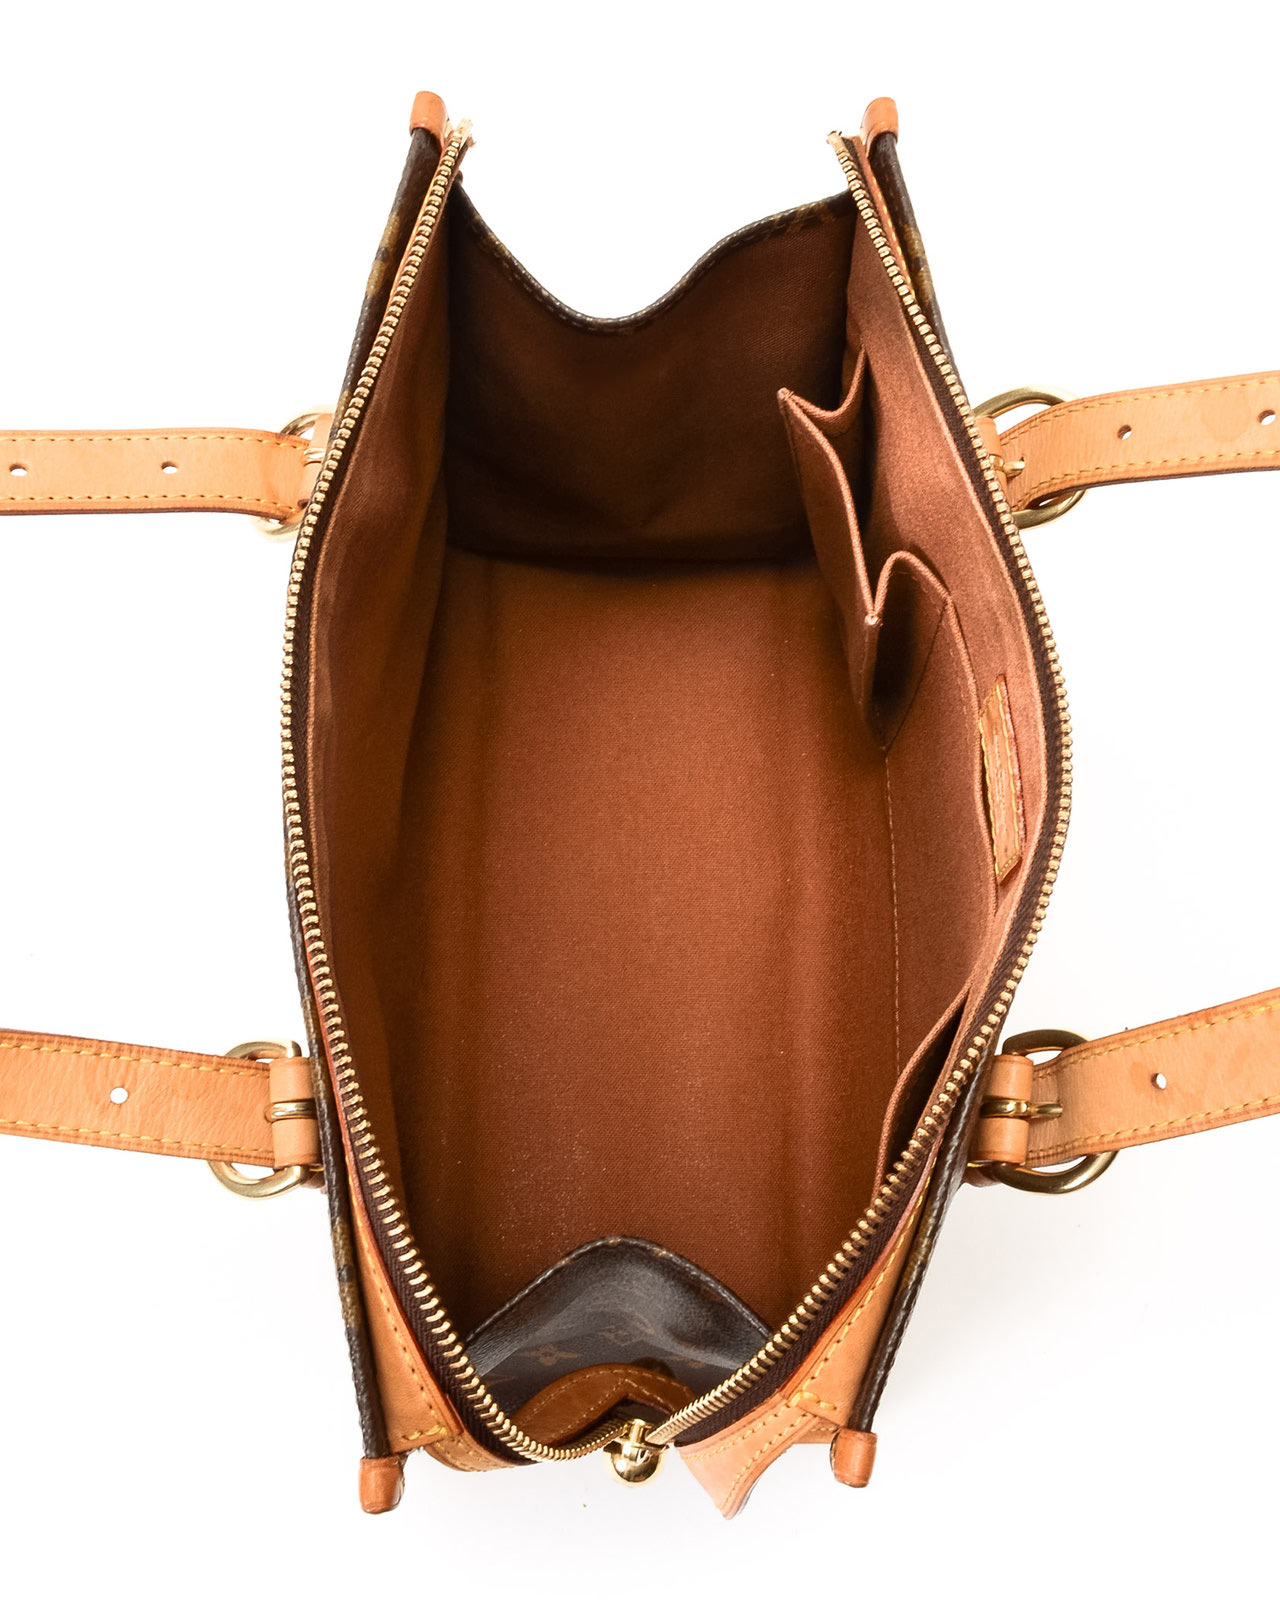 Louis Vuitton Popincourt Haut Handbag in Brown - Lyst